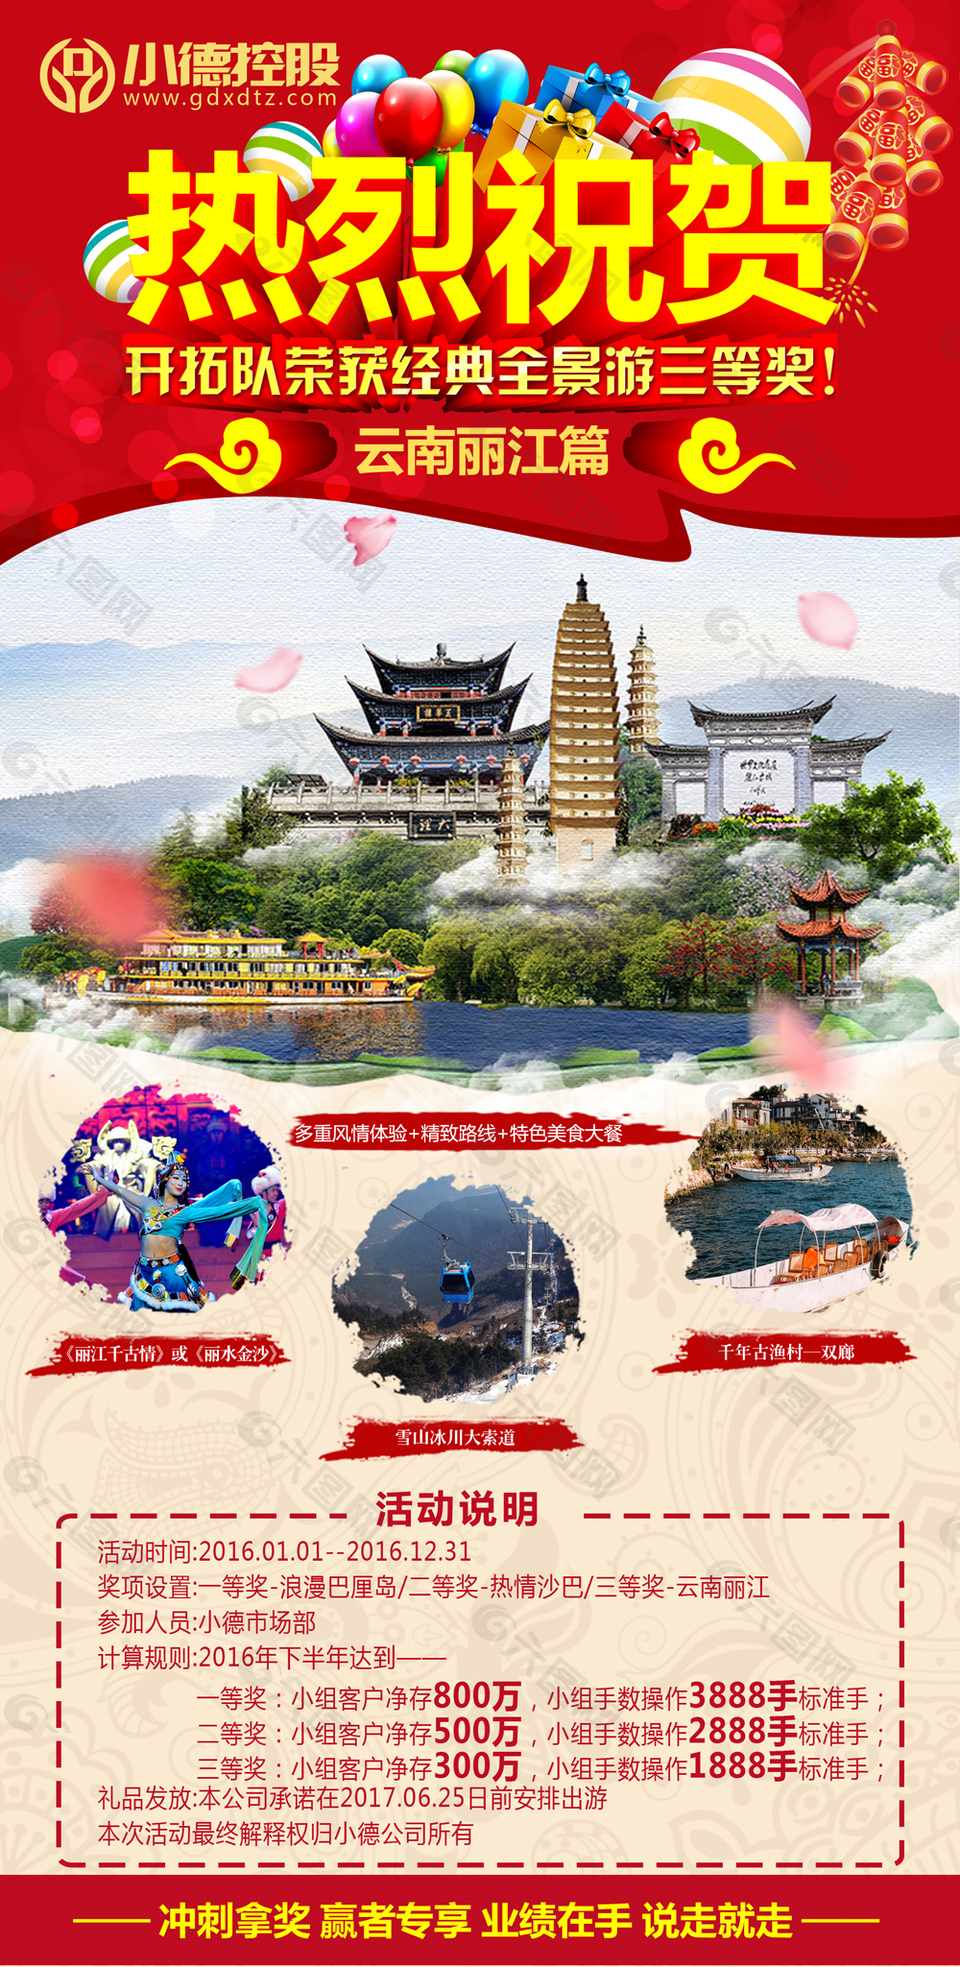 云南丽江旅游奖励活动海报宣传